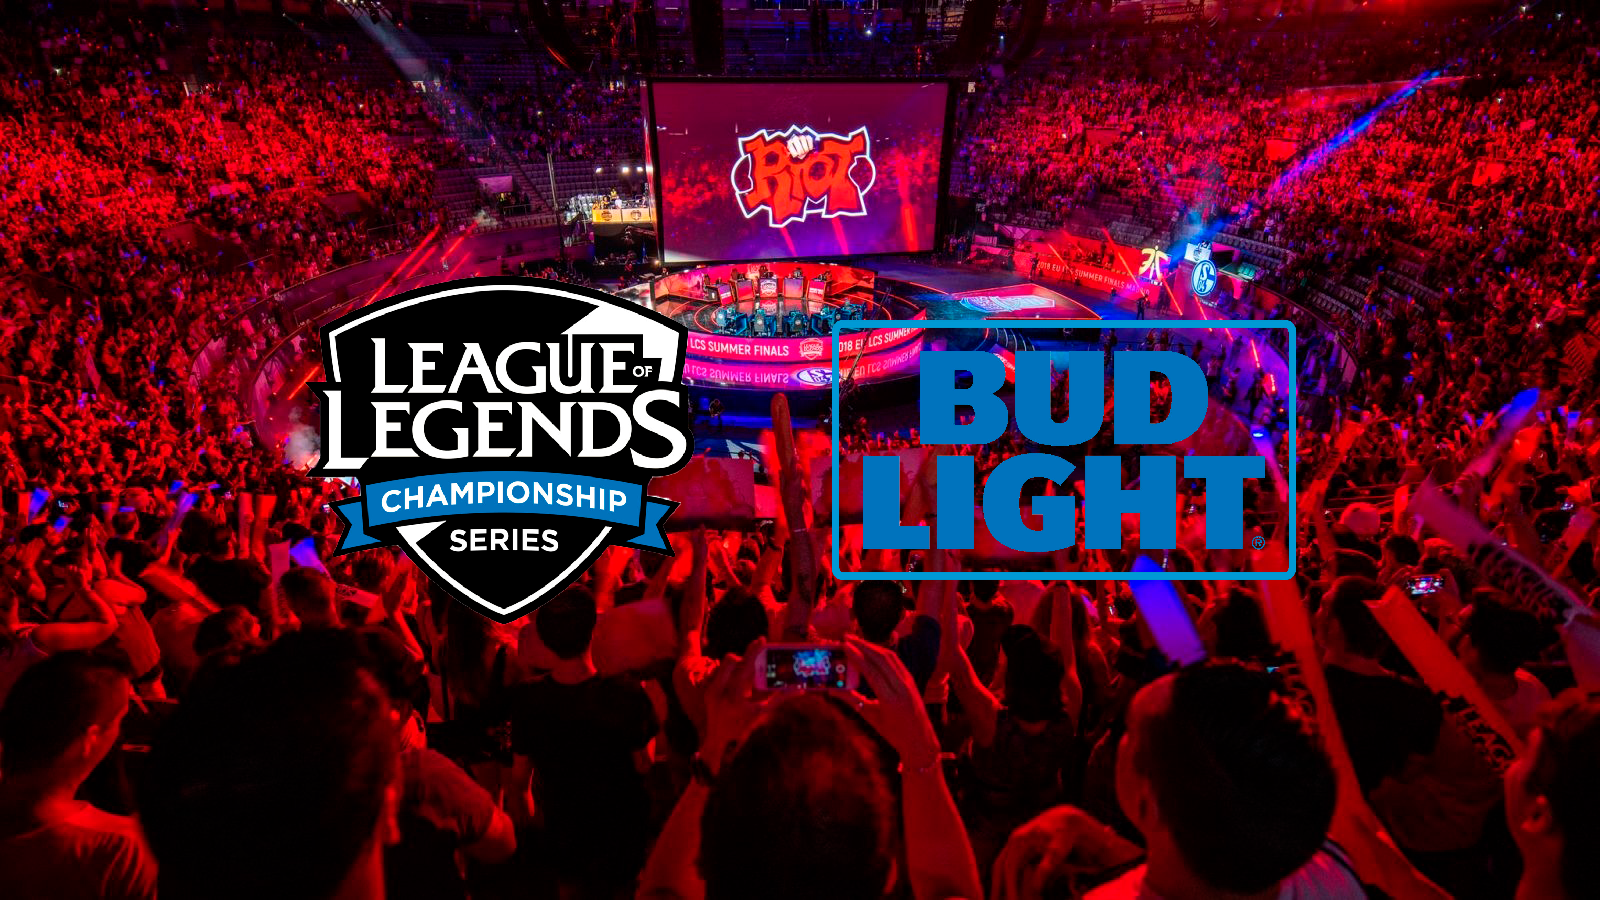 Acuerdo entre League of Legends y Bud Light